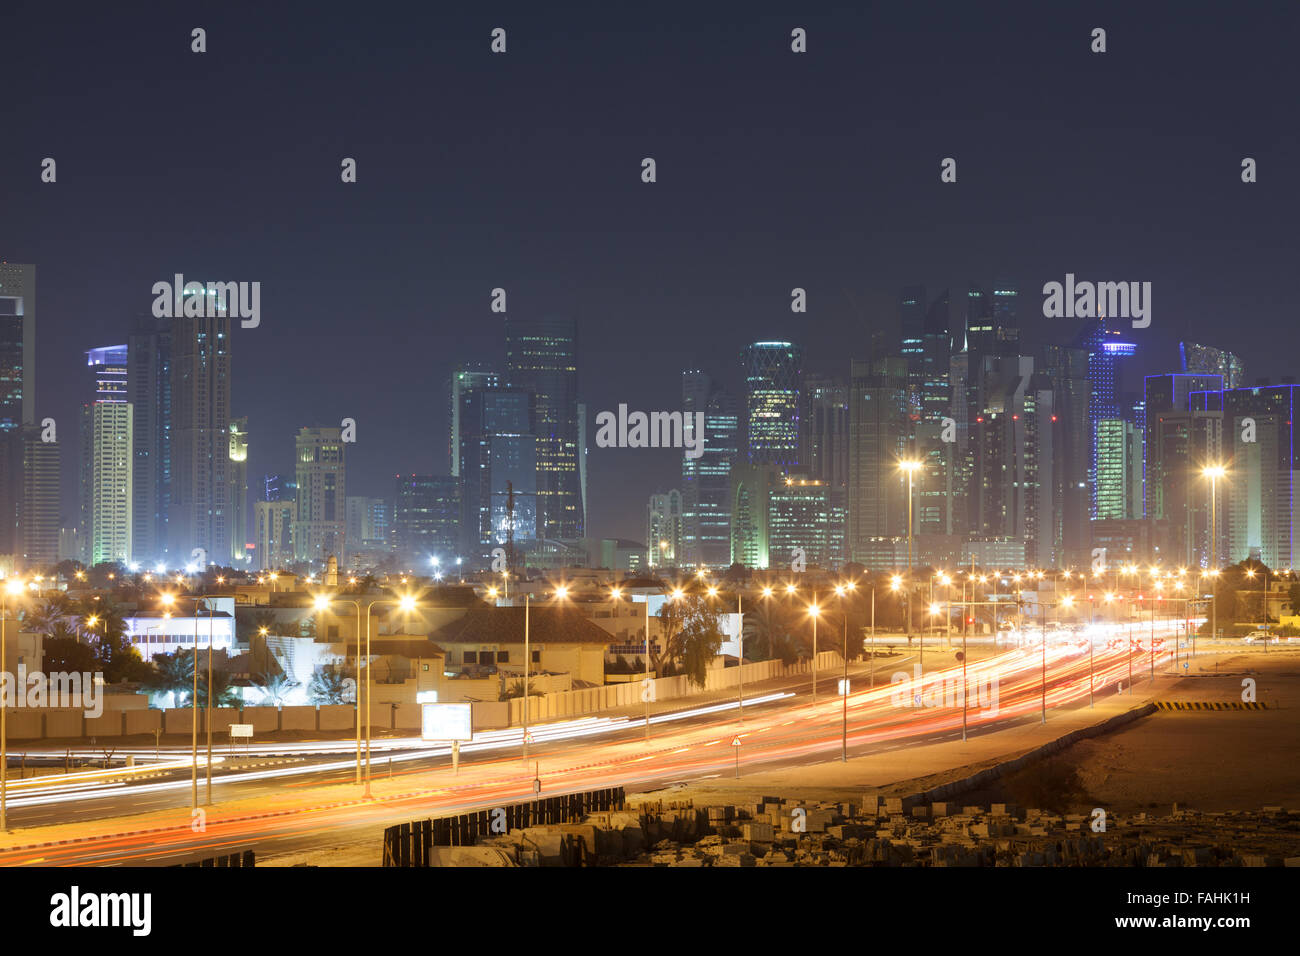 El horizonte de la ciudad de Doha en la noche Foto de stock